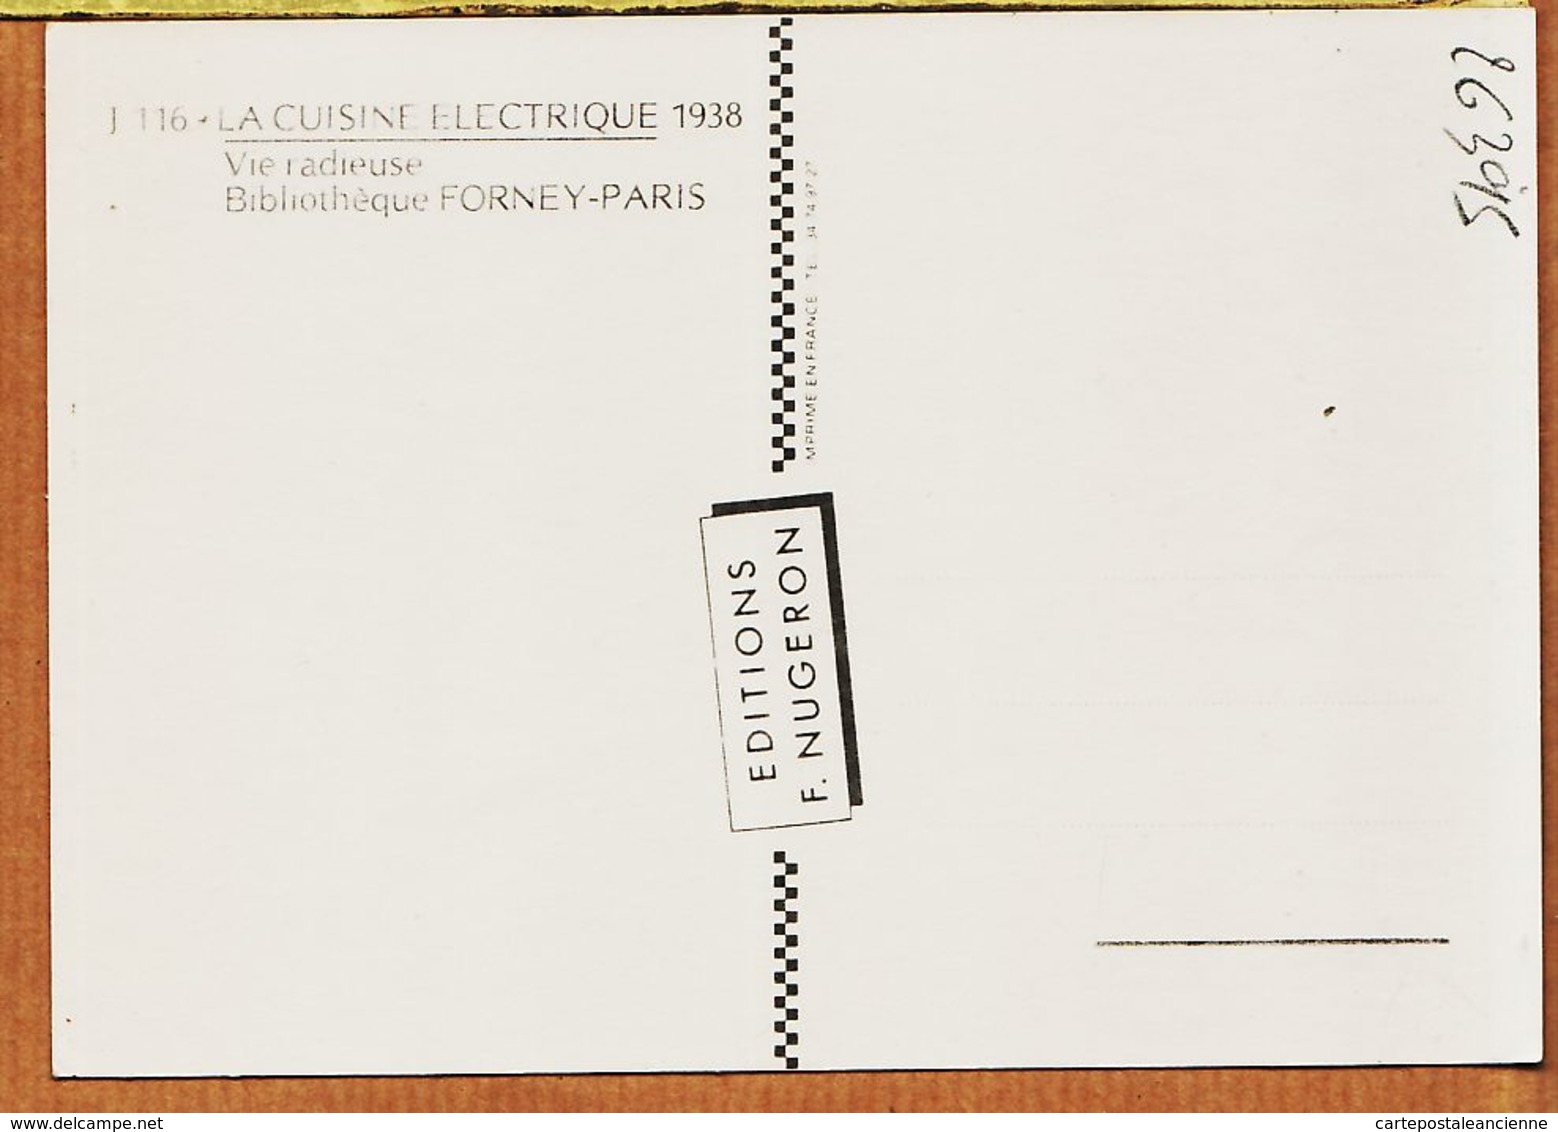 Cppub 064 VIE RADIEUSE La CUISINE ELECTRIQUE 1938 Affiche R. BLONDE Bibliothèque FORNEY-PARIS  REPRO NUGERON J-116 - Publicité